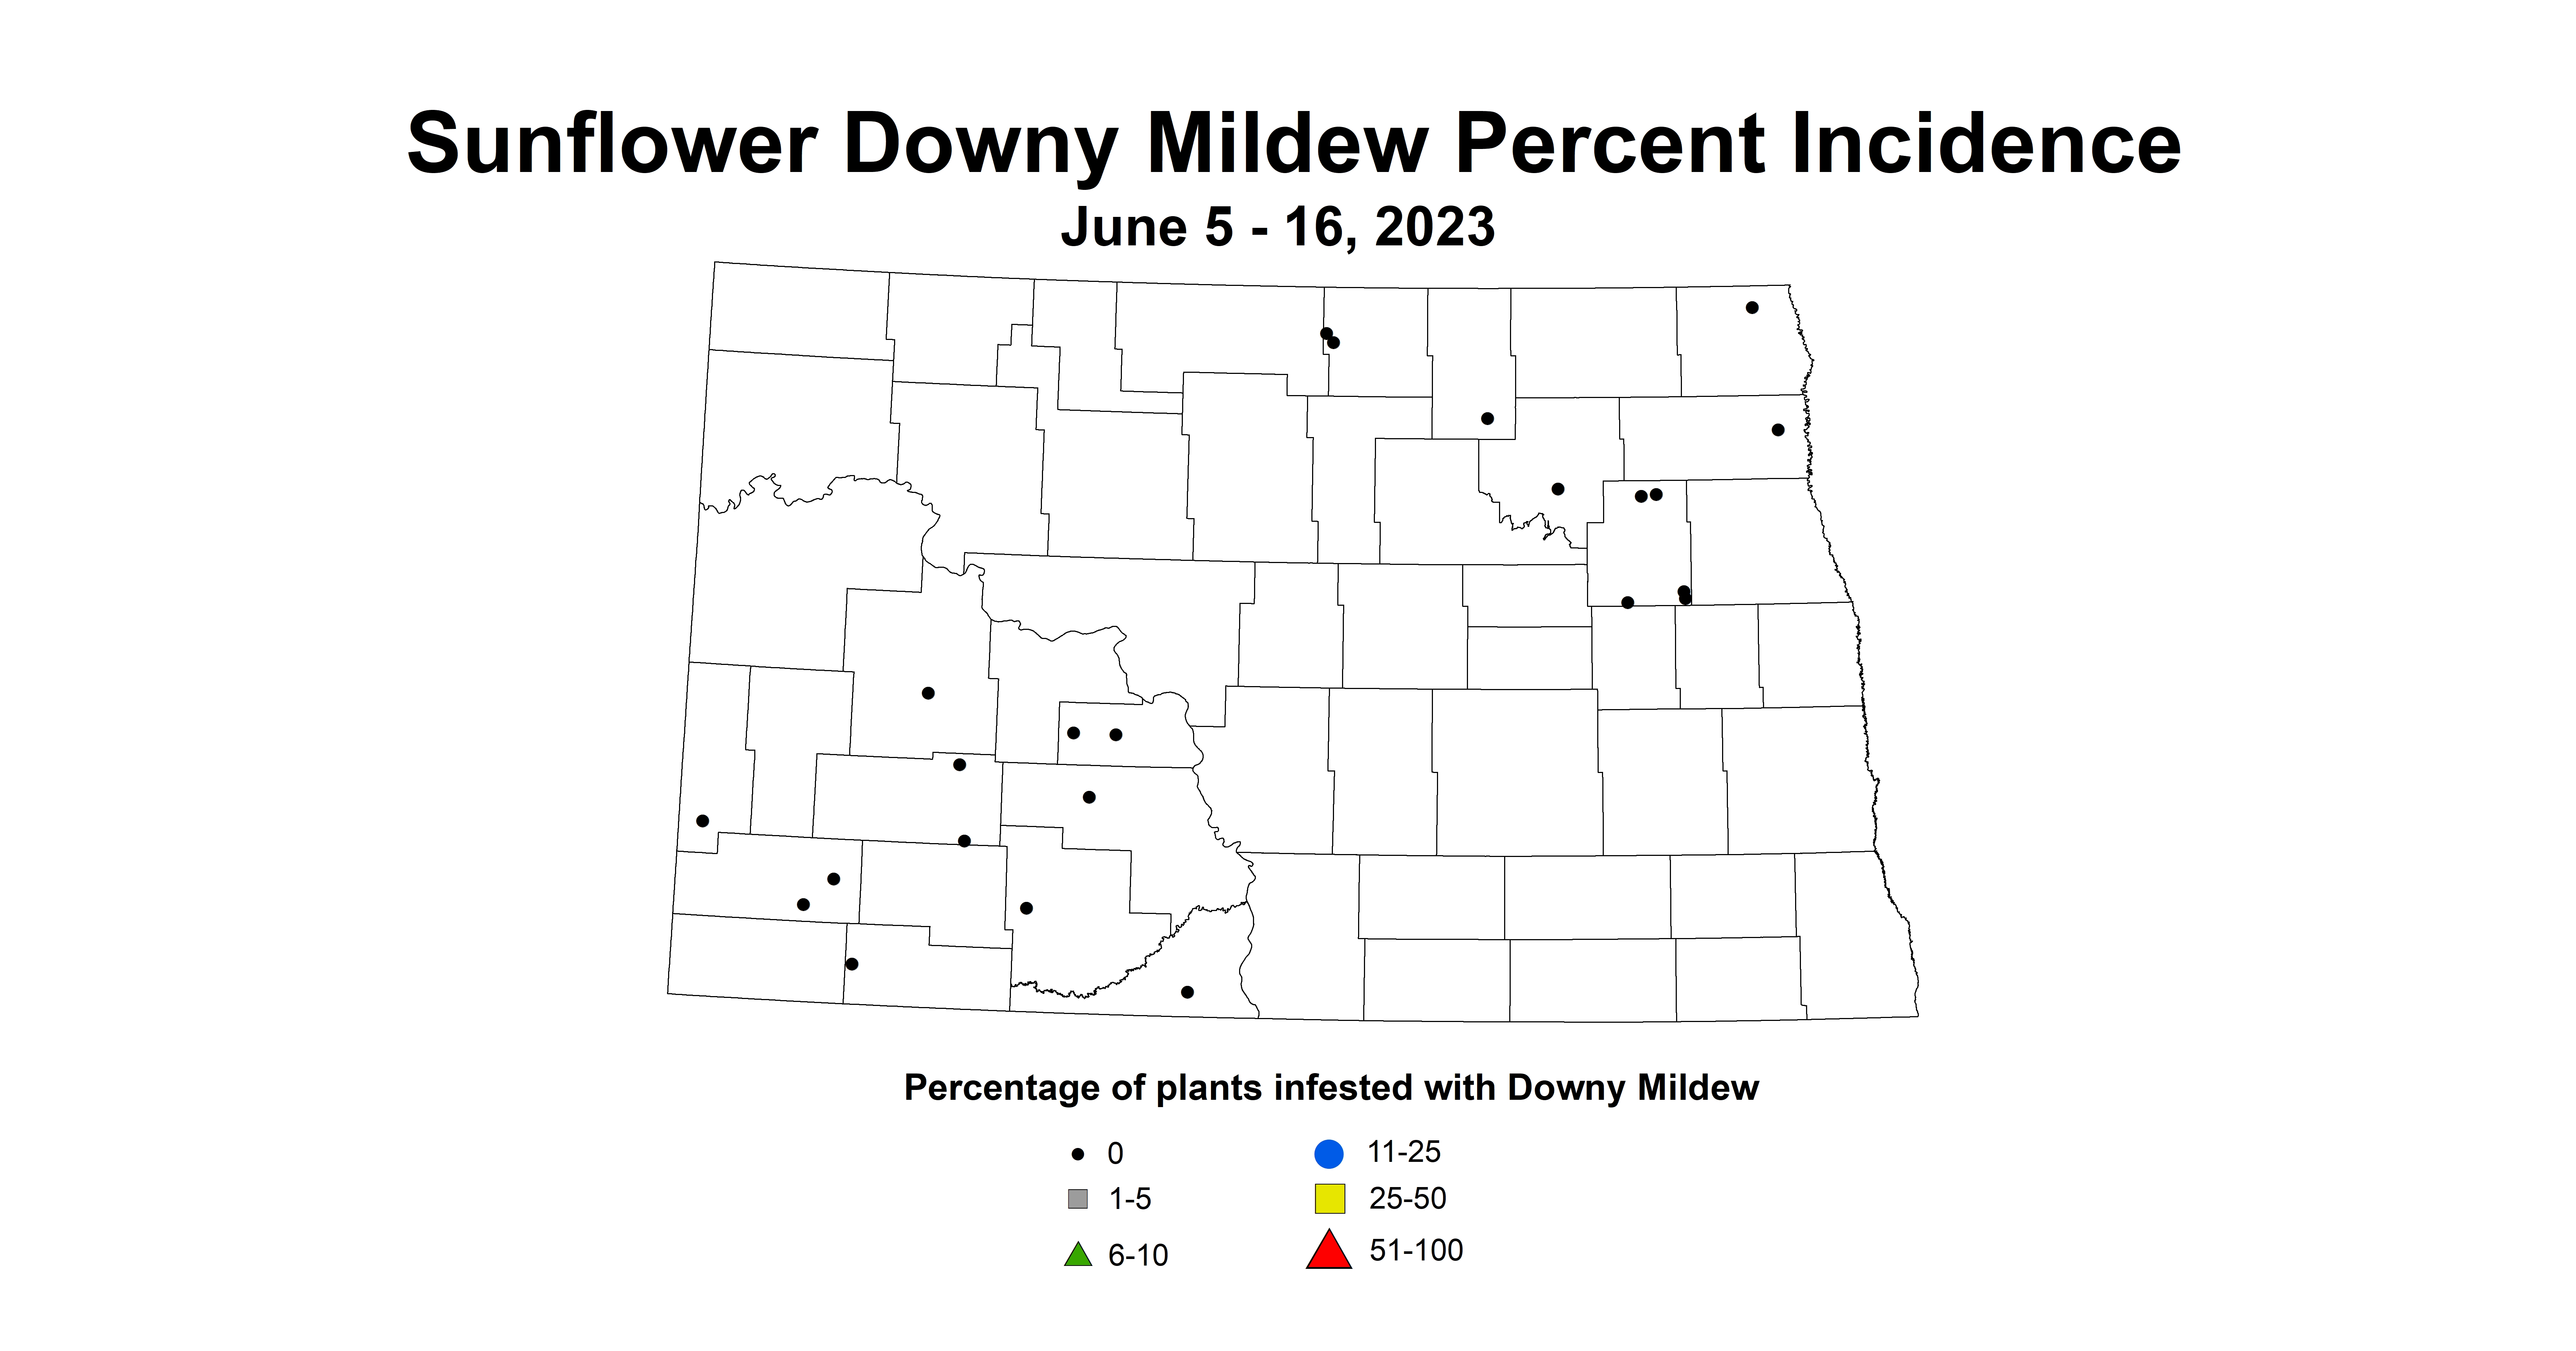 sunflower downy mildew June 5-16 2023